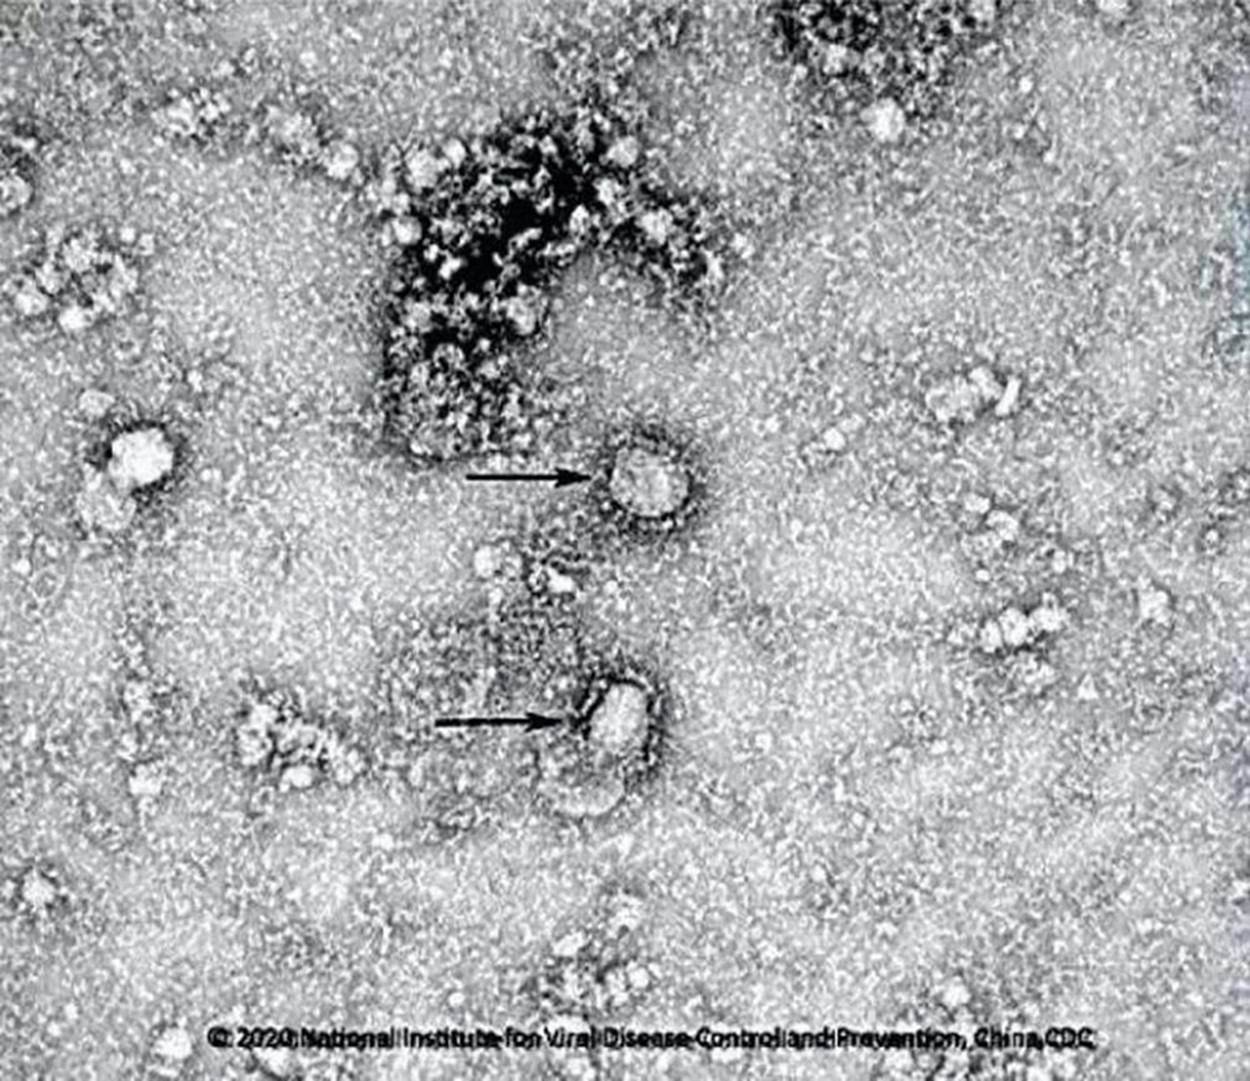   Hình ảnh đầu tiên của chủng virus Corona mới trên kính hiển vi. Ảnh: Reuters